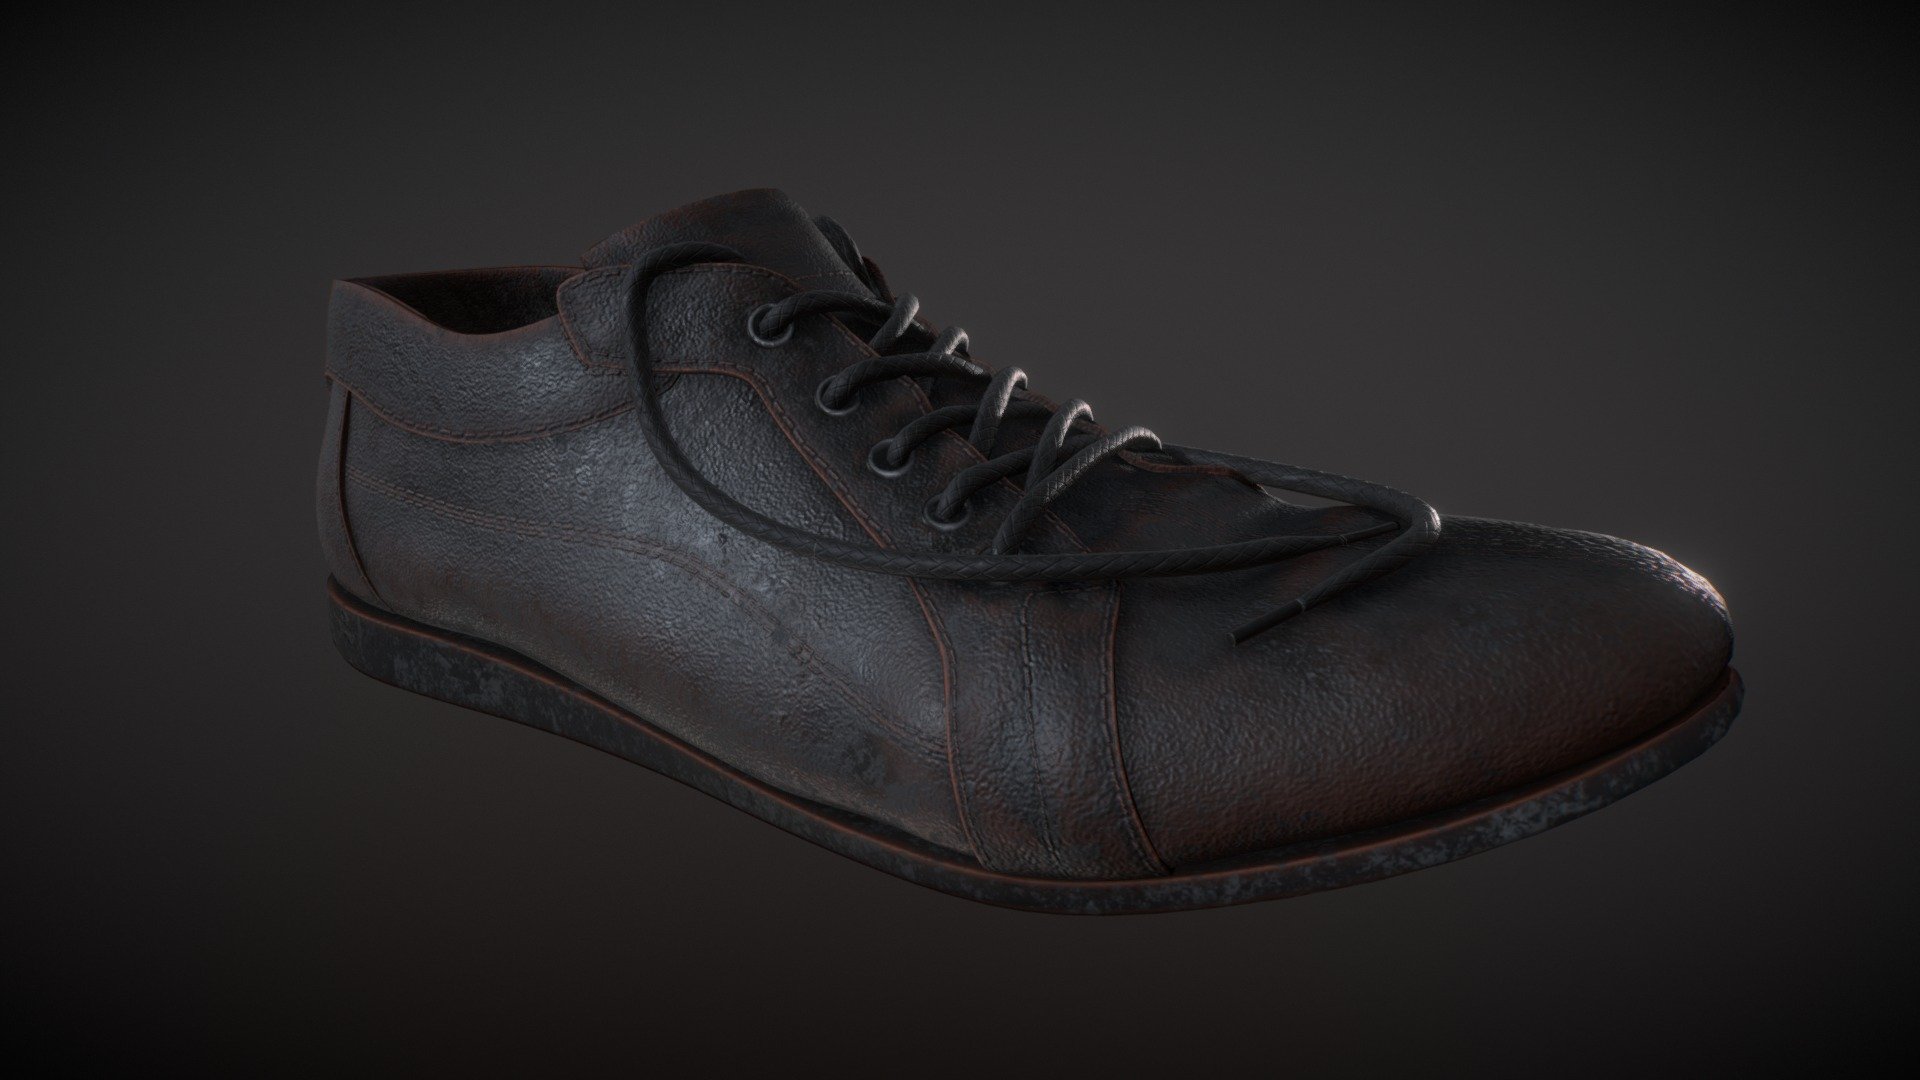 PBR Shoe Model for training )) - Shoes - 3D model by koloved 3d model